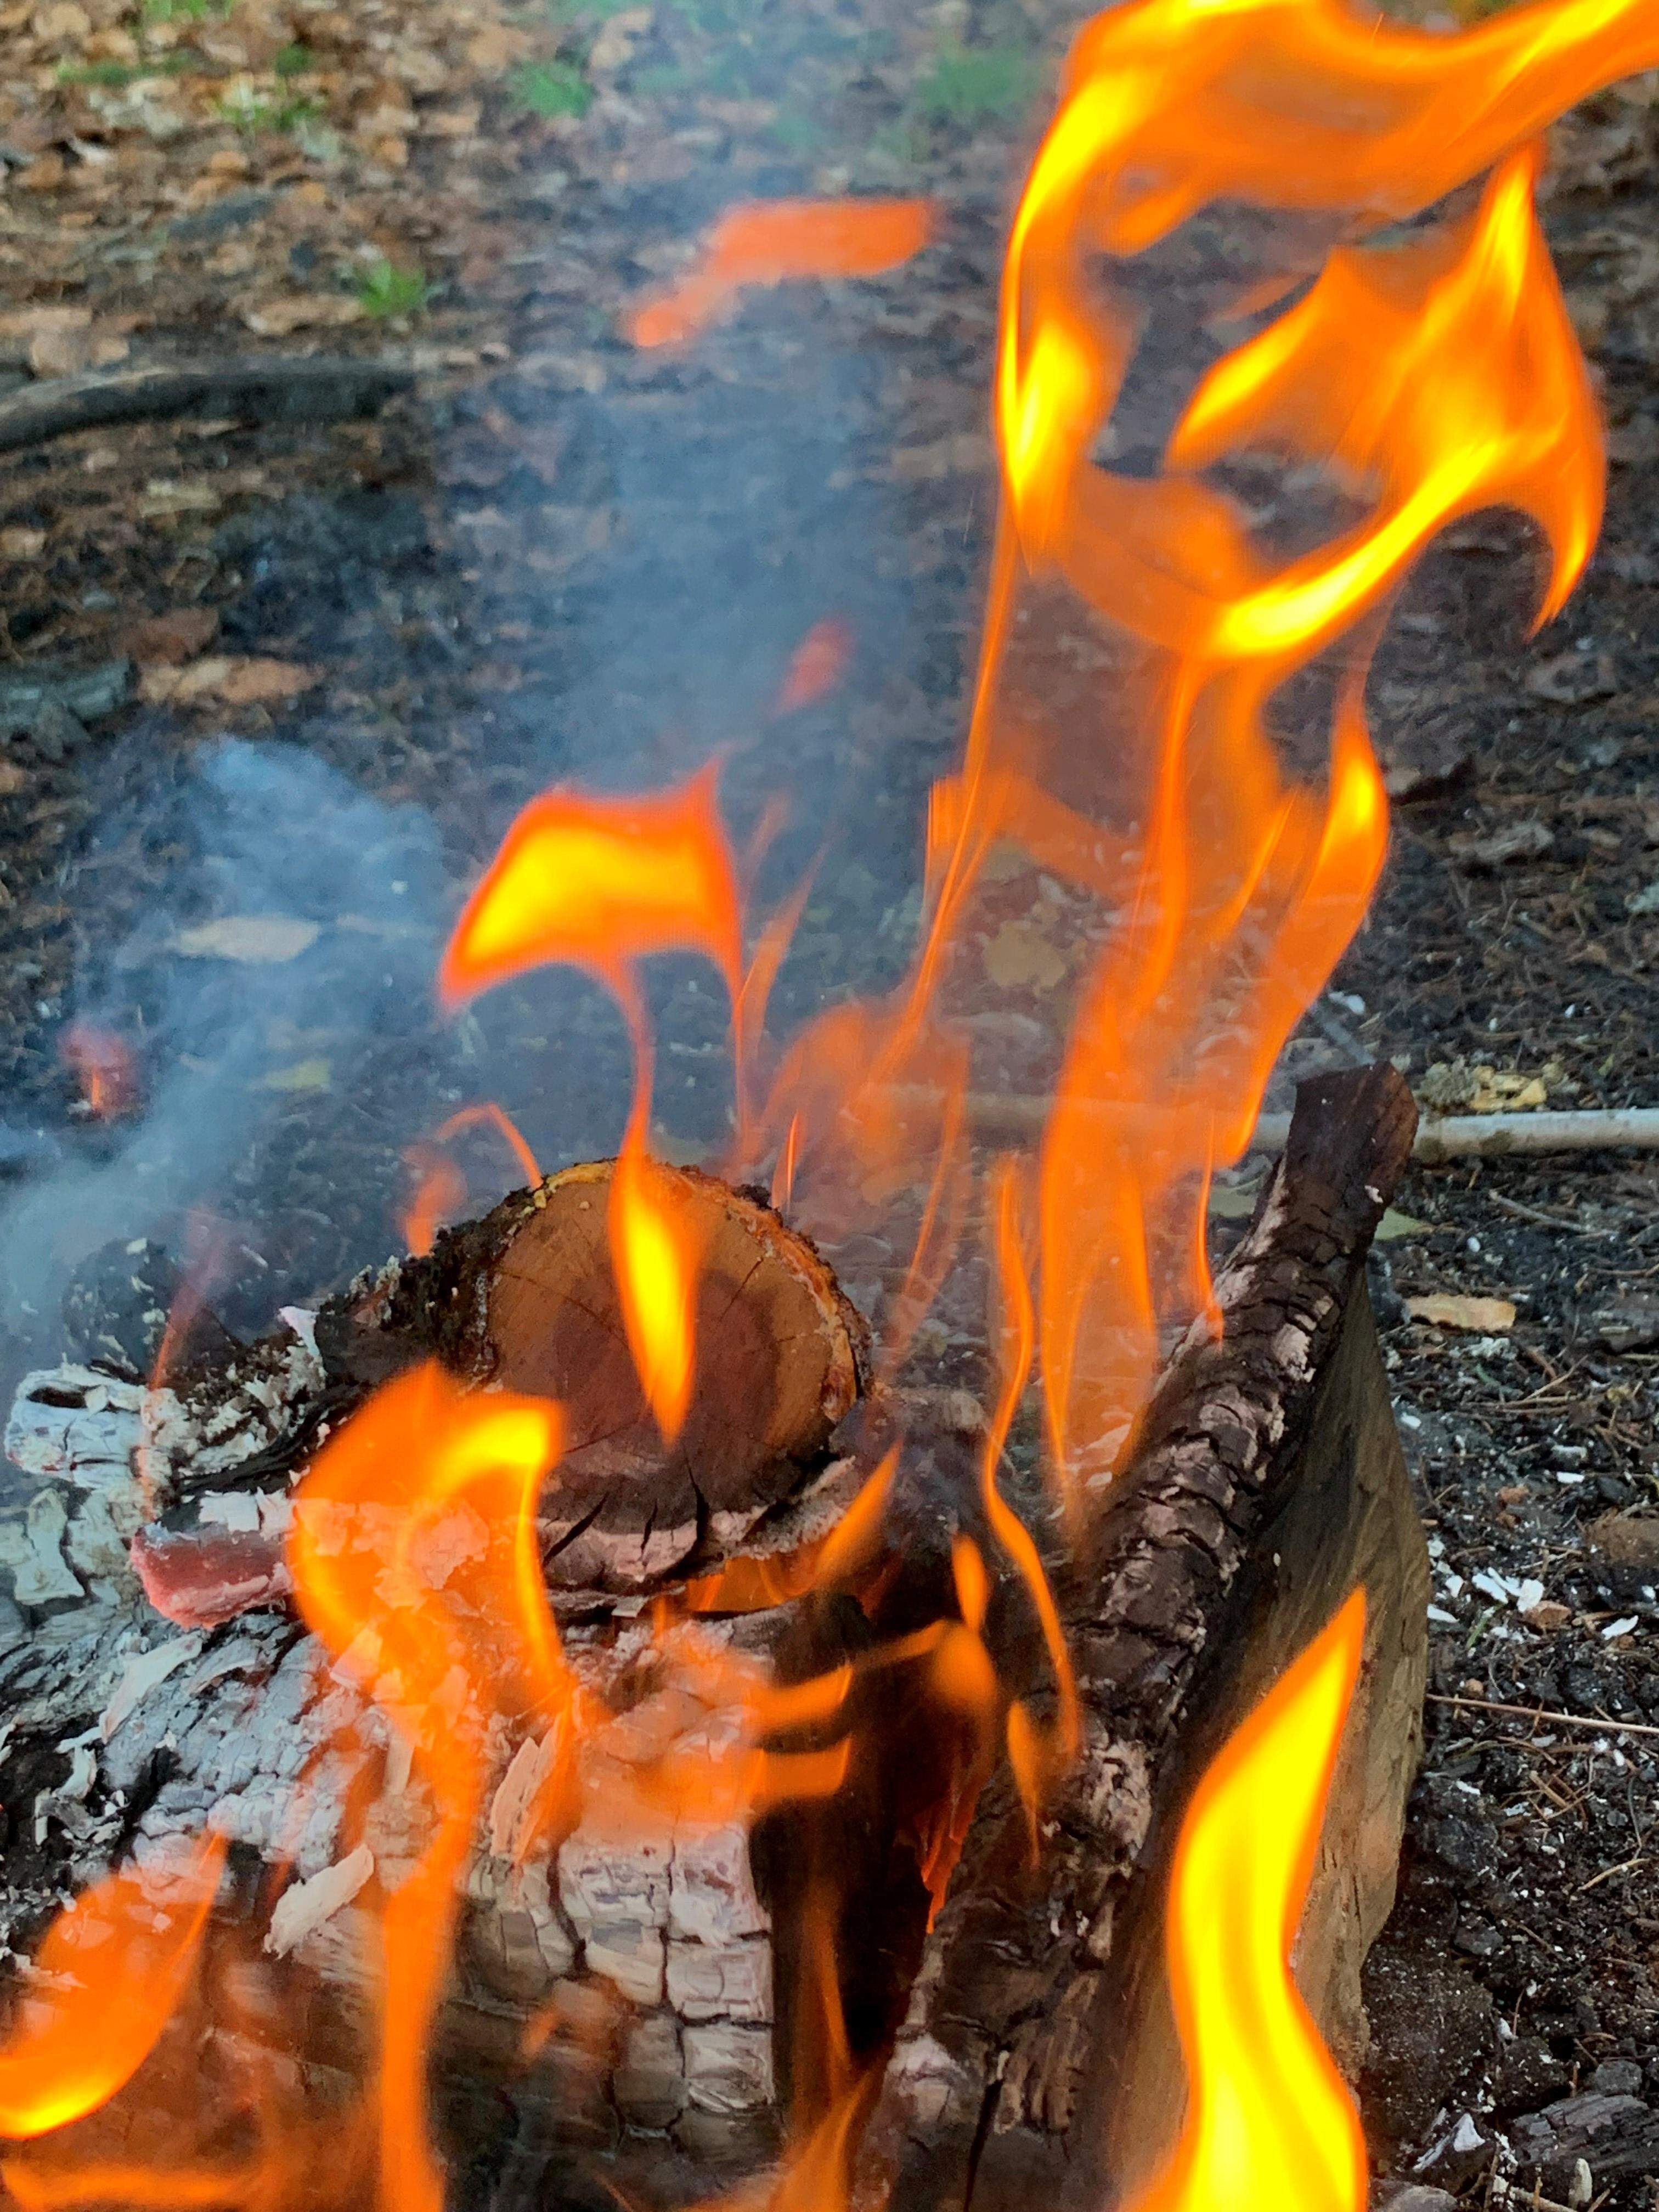 übergib das Alte dem Feuer - empfange das Neue aus dem Feuer